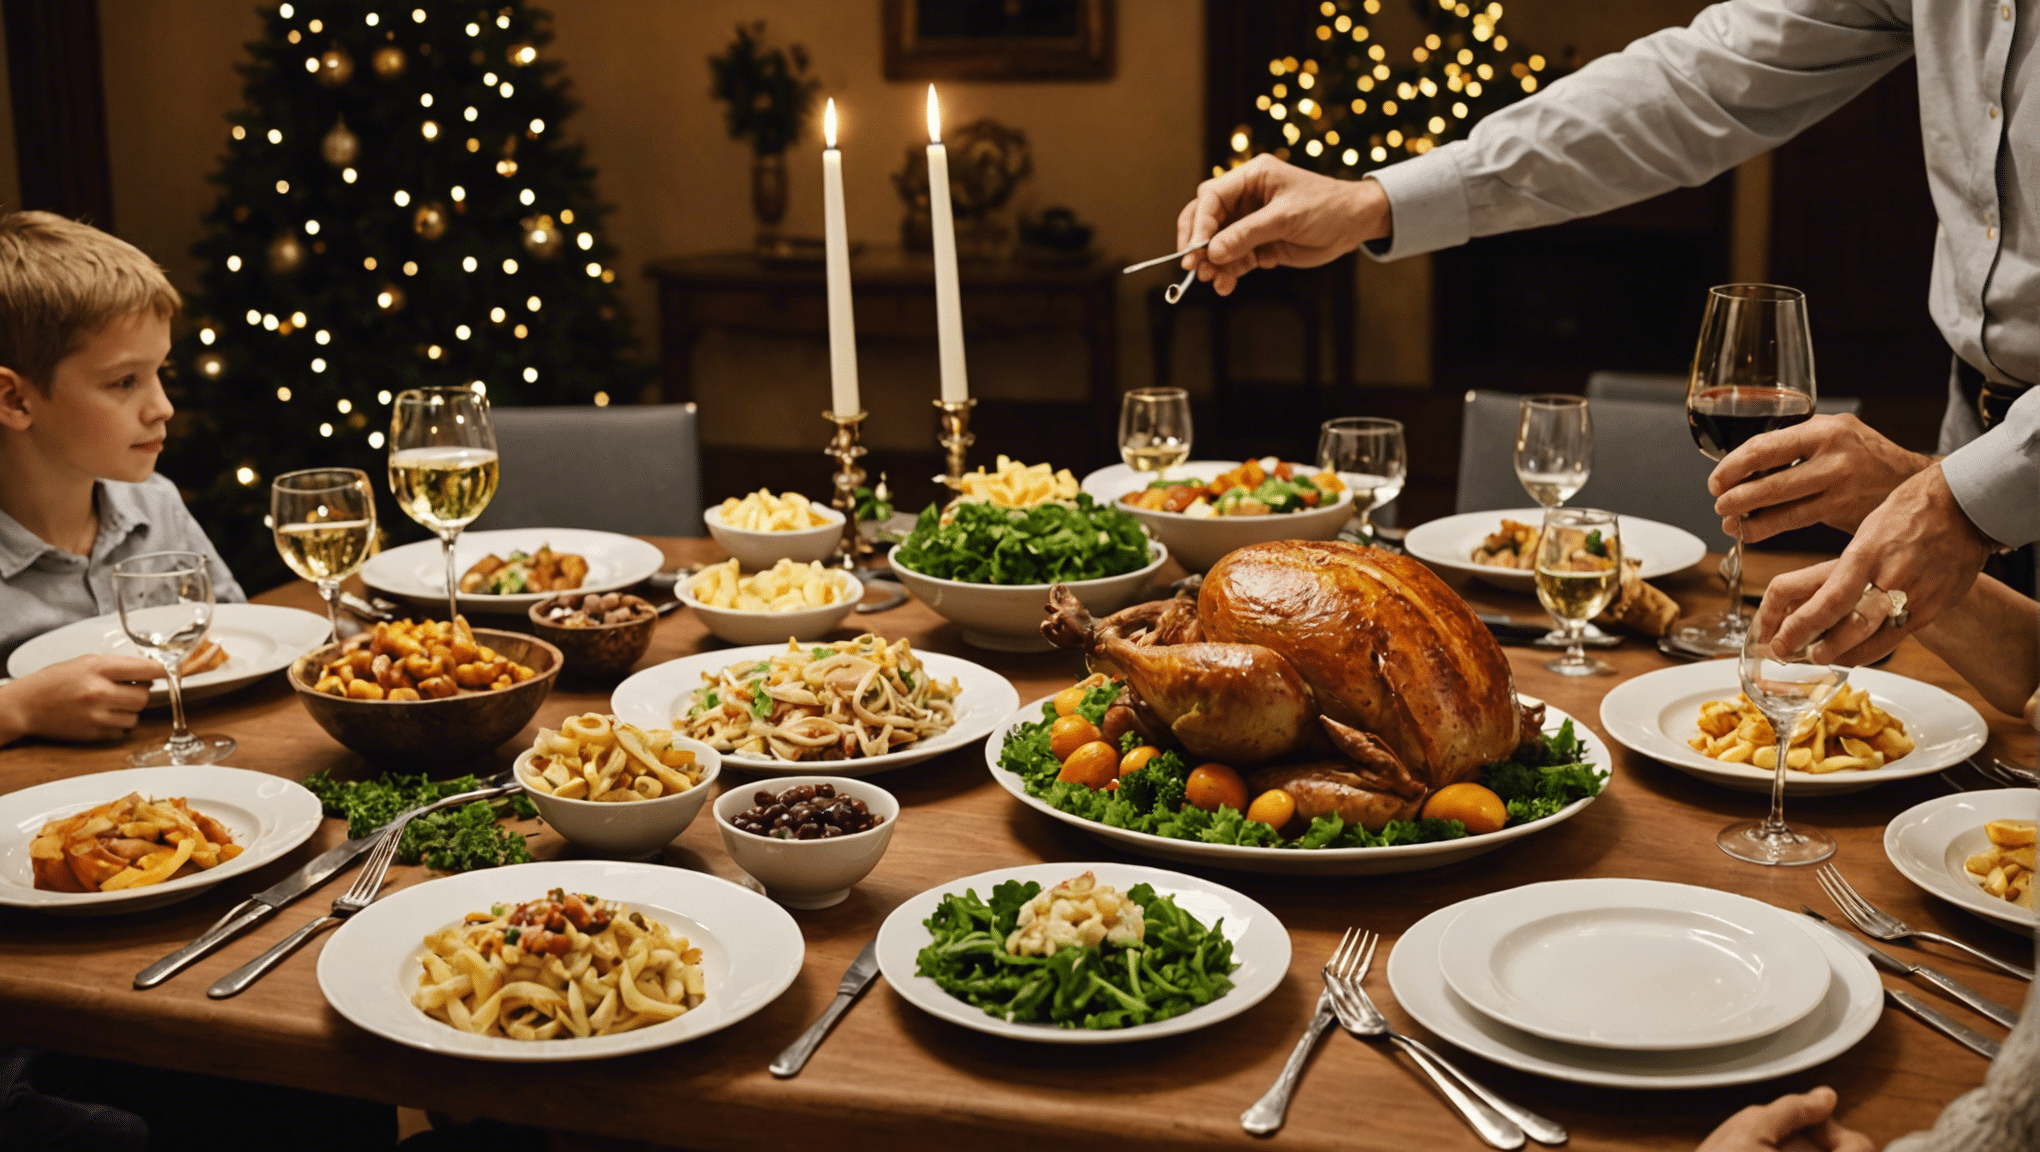 découvrez nos meilleurs conseils pour préparer des repas festifs et raffinés qui émerveilleront vos convives. recettes savoureuses et astuces culinaires au rendez-vous !